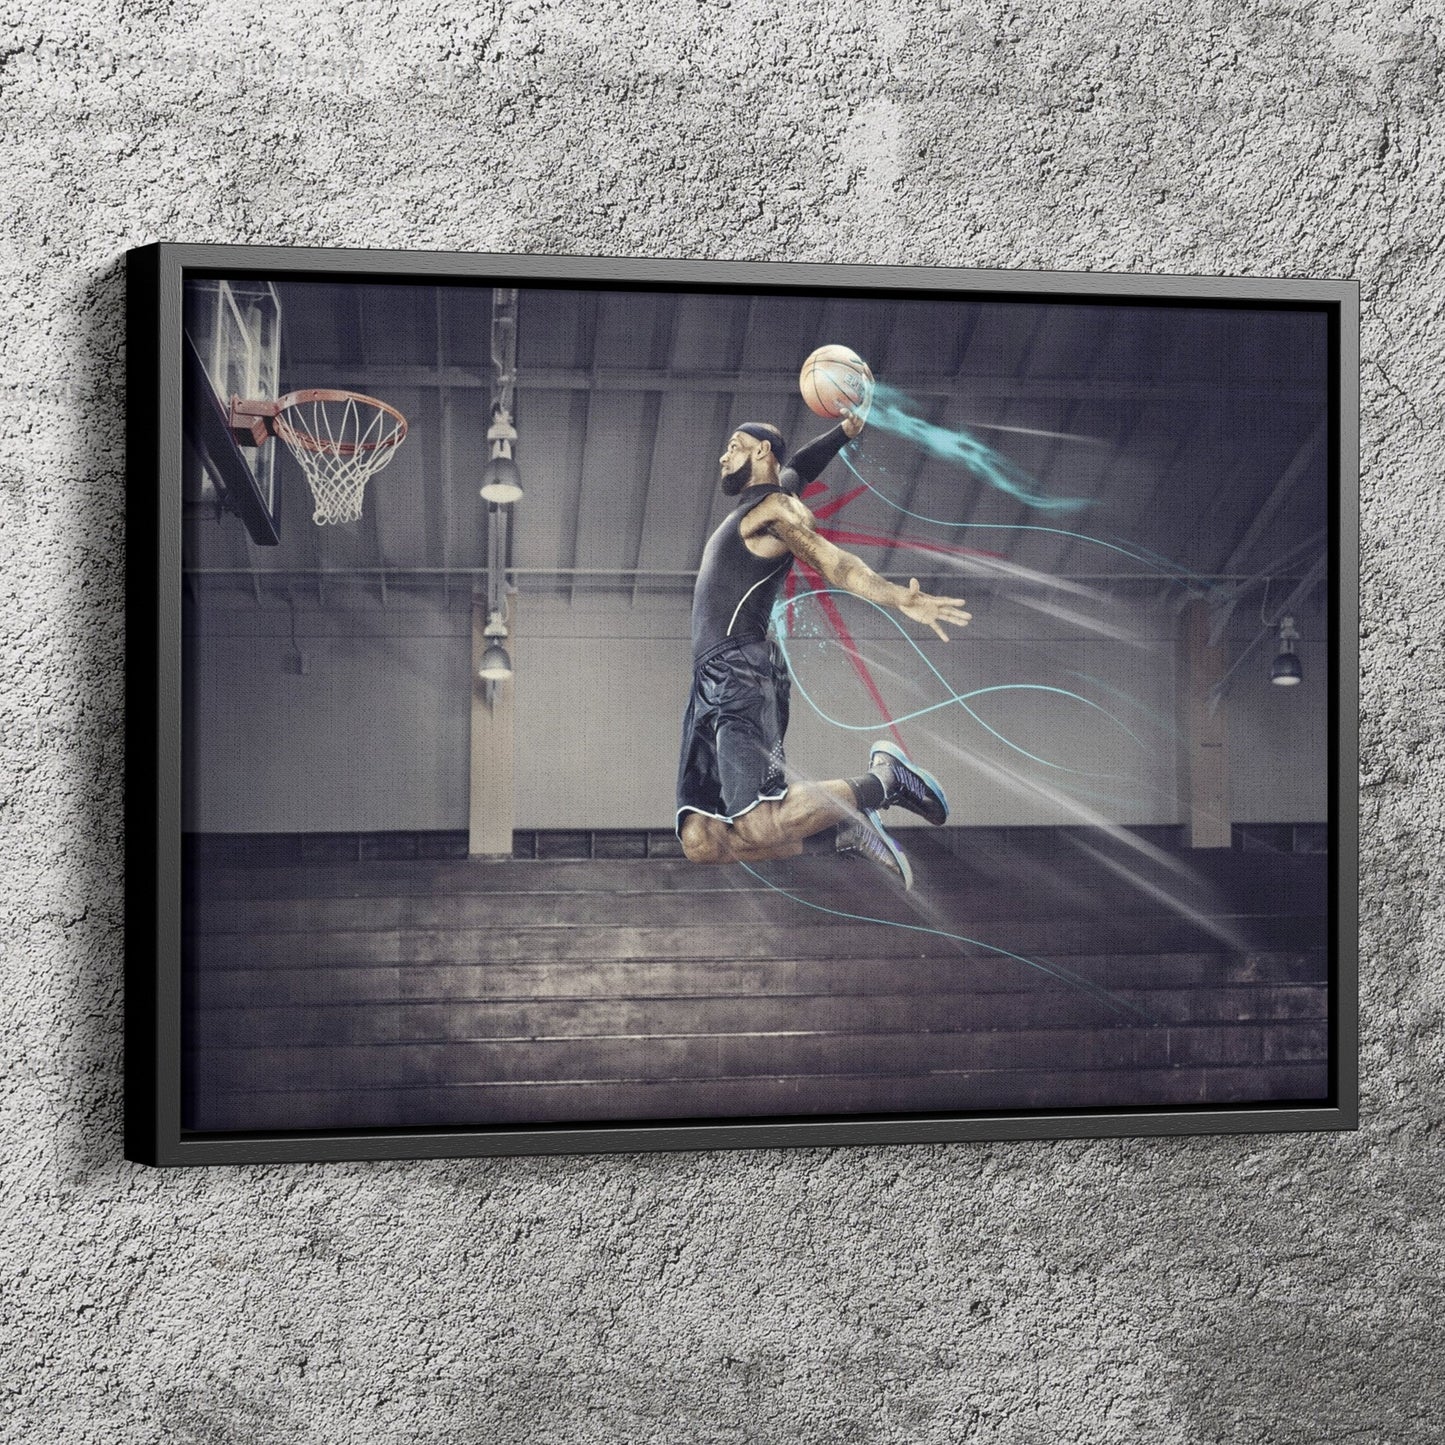 Lebron James Poster Basketball Slum Dunk Art Effect Wall Art Home Decor Hand Made Canvas Print